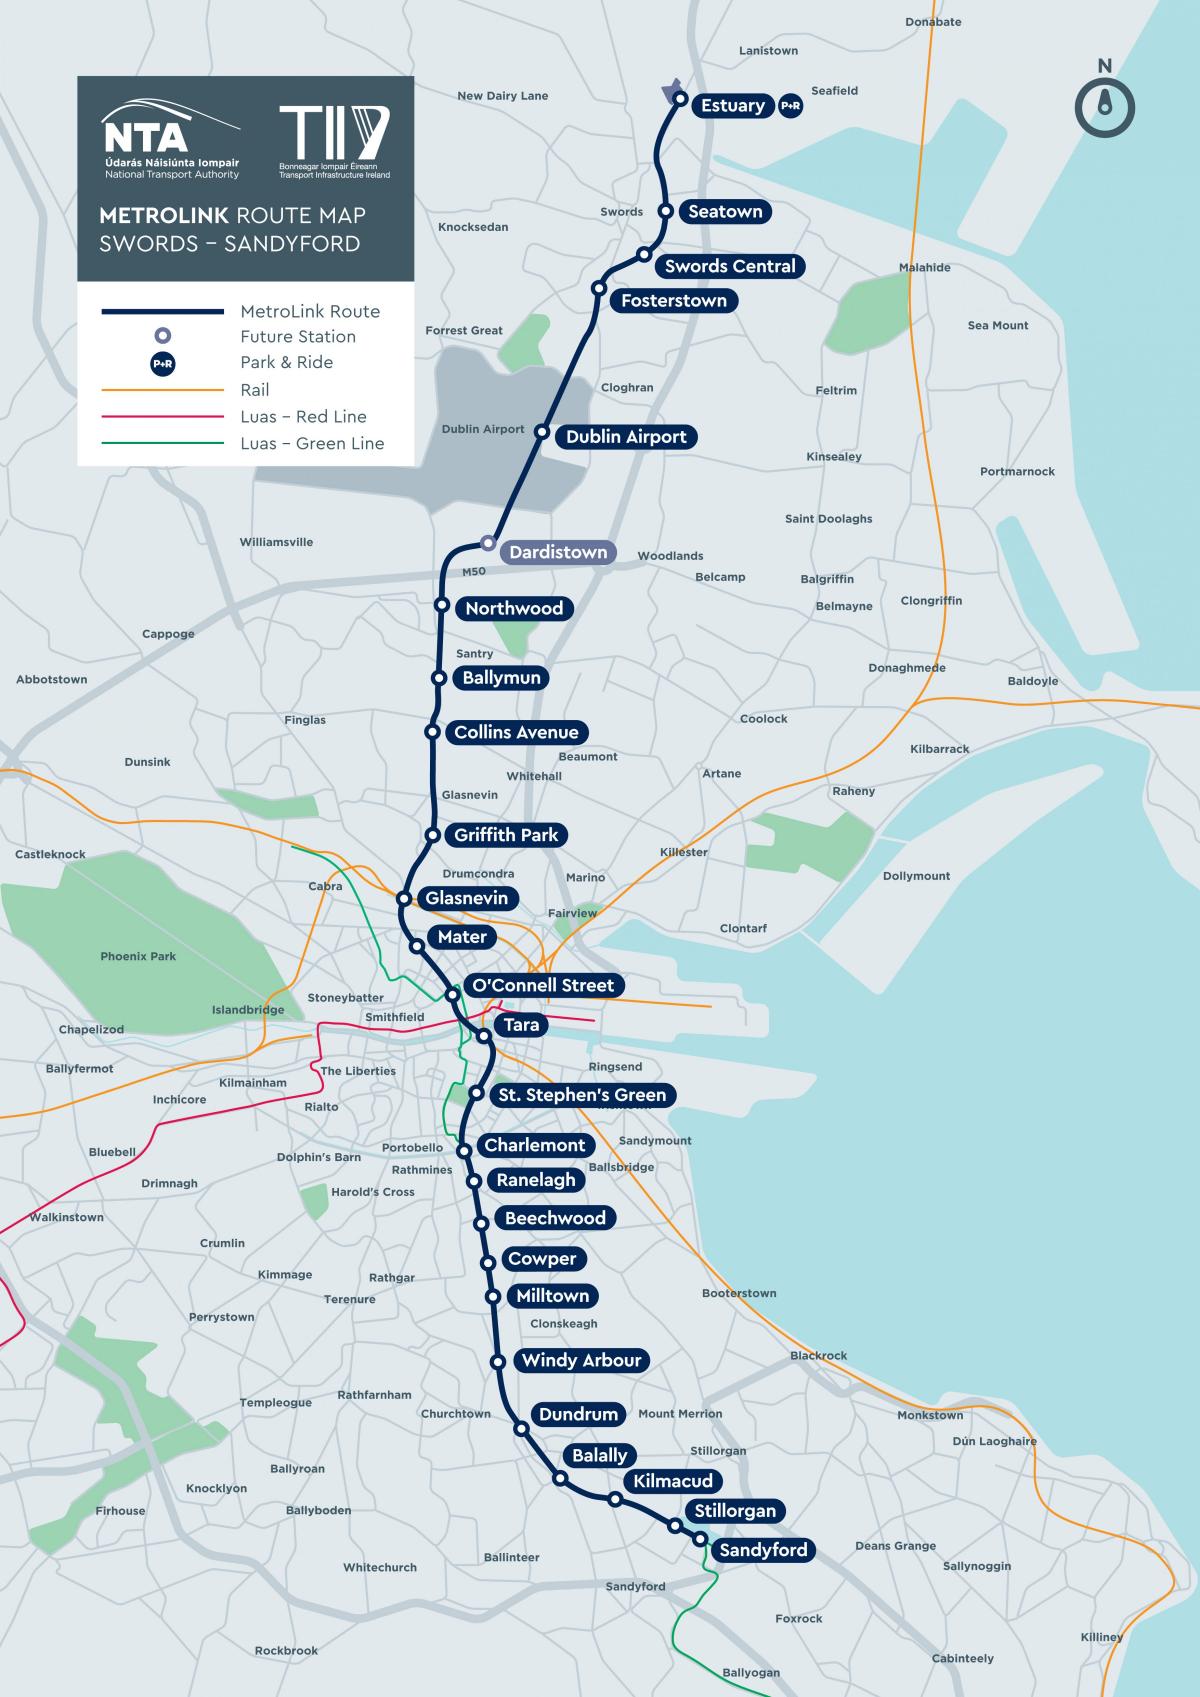 Mapa das estações de metro de Dublin